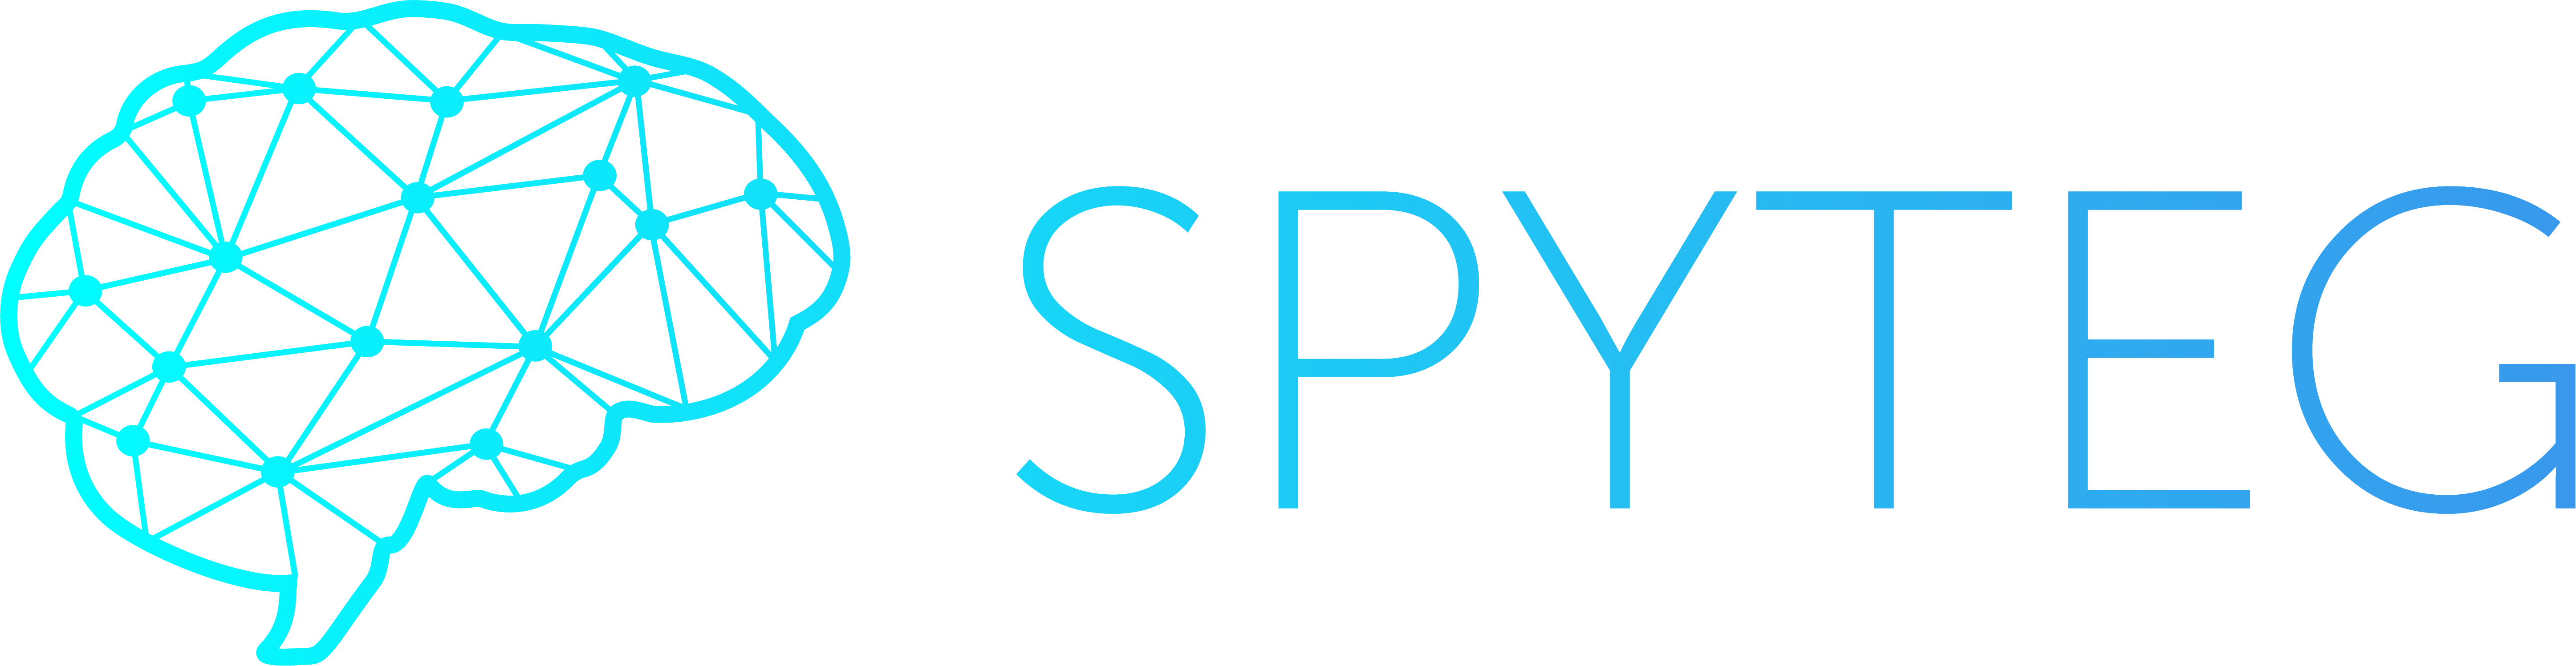 Spyteg Coupon Code